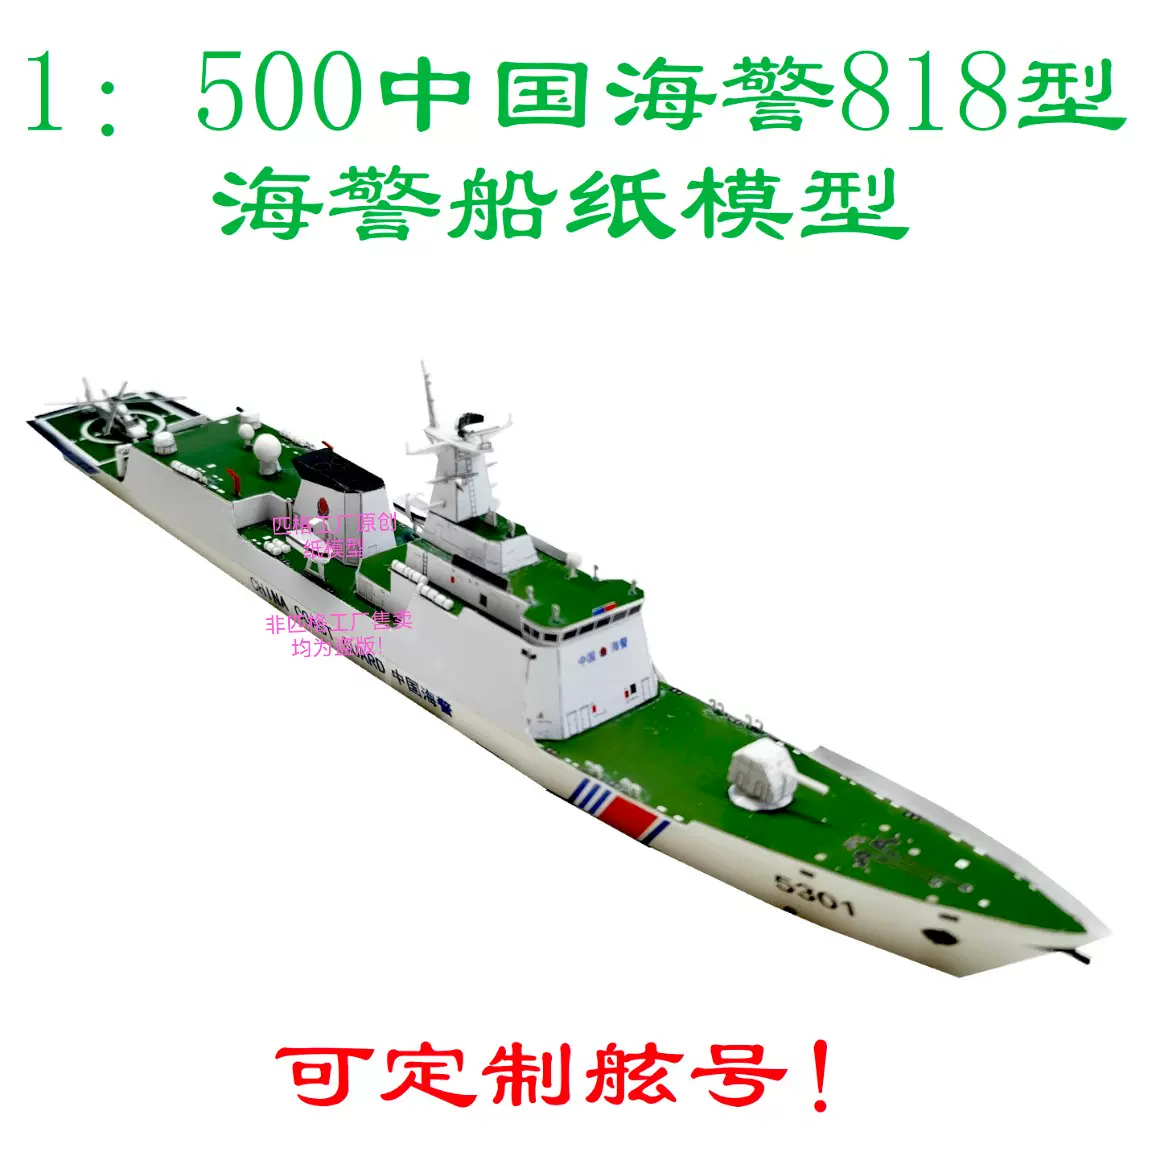 匹格工厂中国海警818型海警船模型3D纸模型DIY海军军舰海警船模型-Taobao